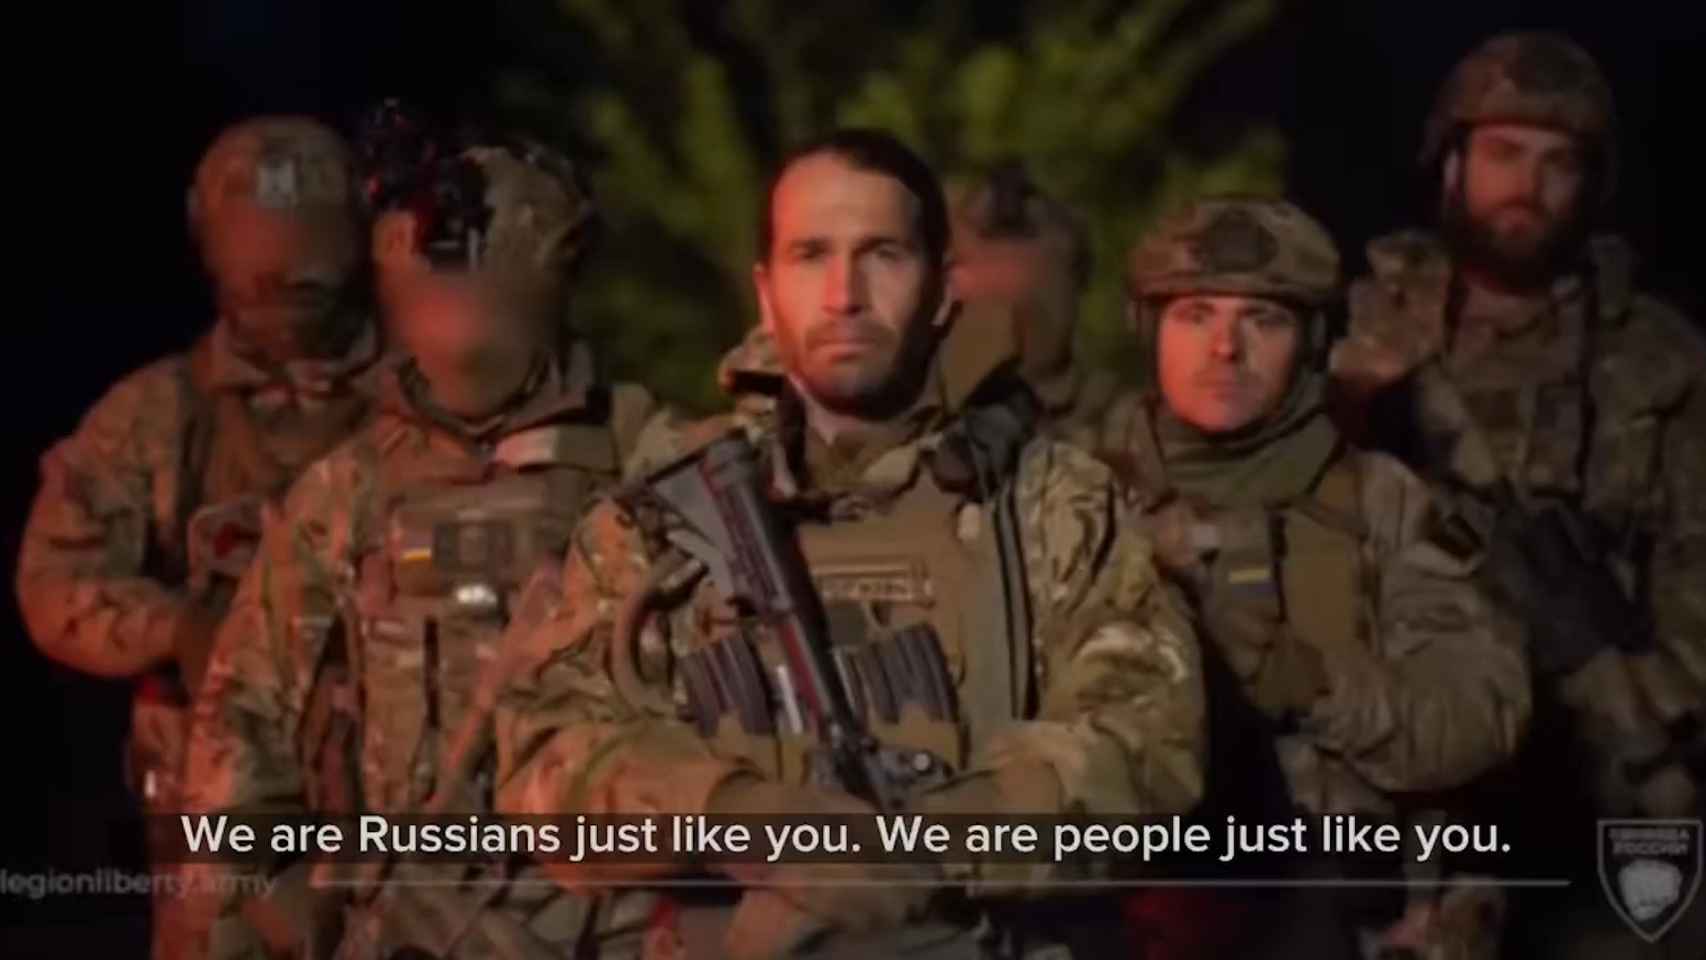 Las autodenominadas guerrillas rusas afirman haber invadido una aldea fronteriza rusa